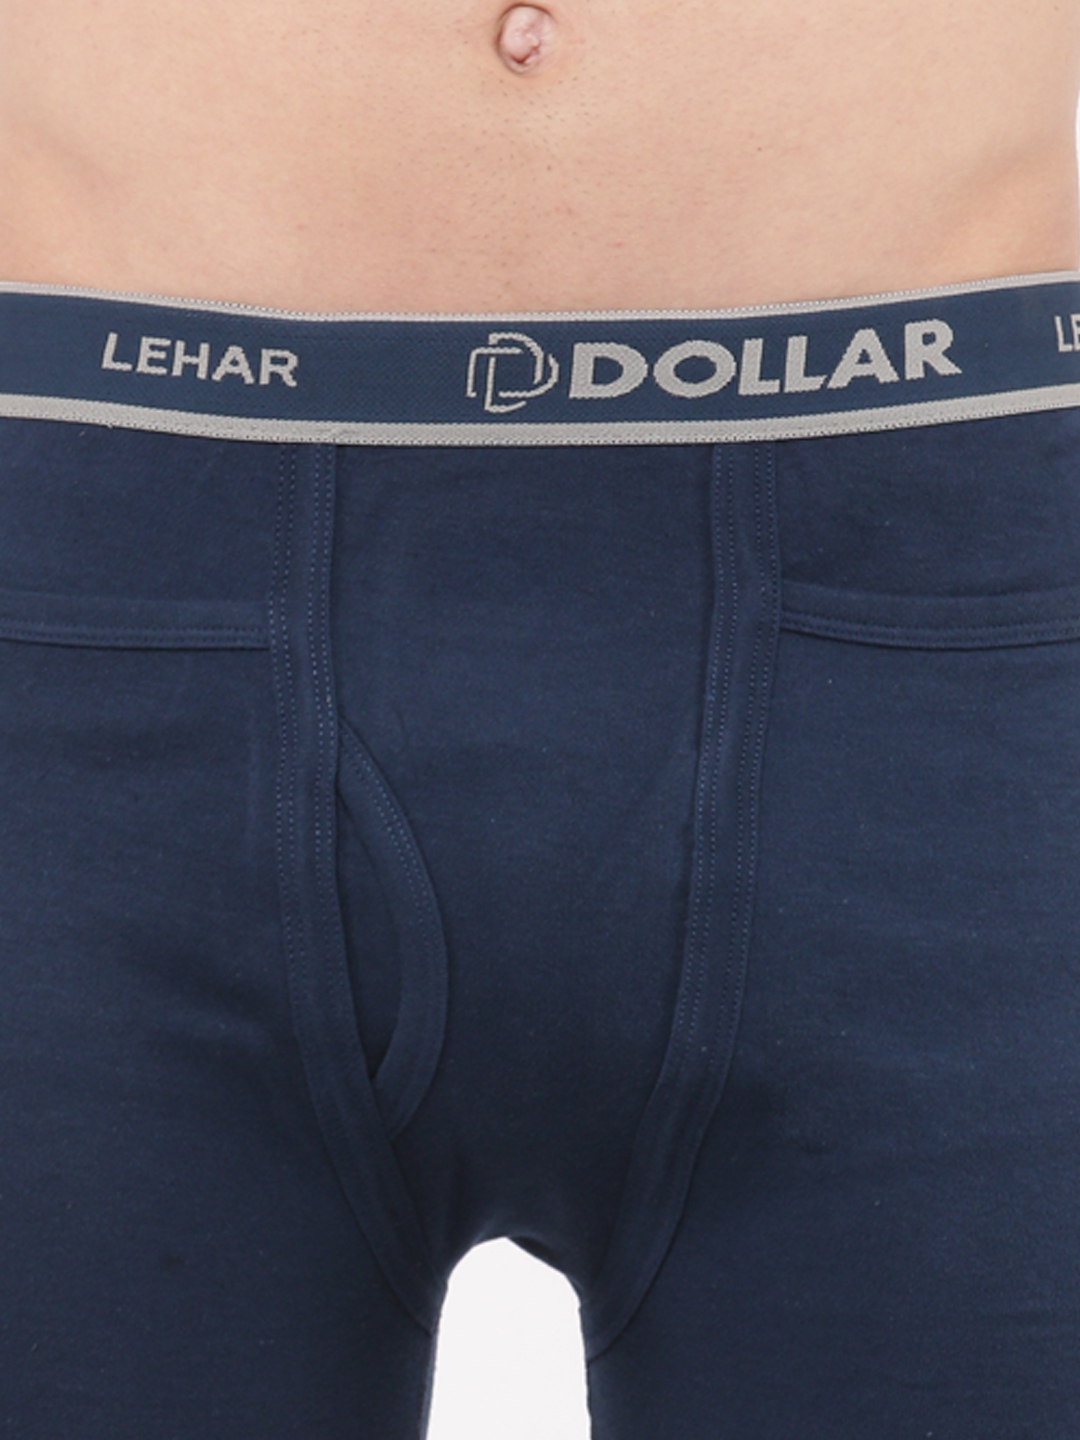 Buy DOLLAR LEHAR Pack Of 10 Dollar Lehar Mens Assorted Long Trunk